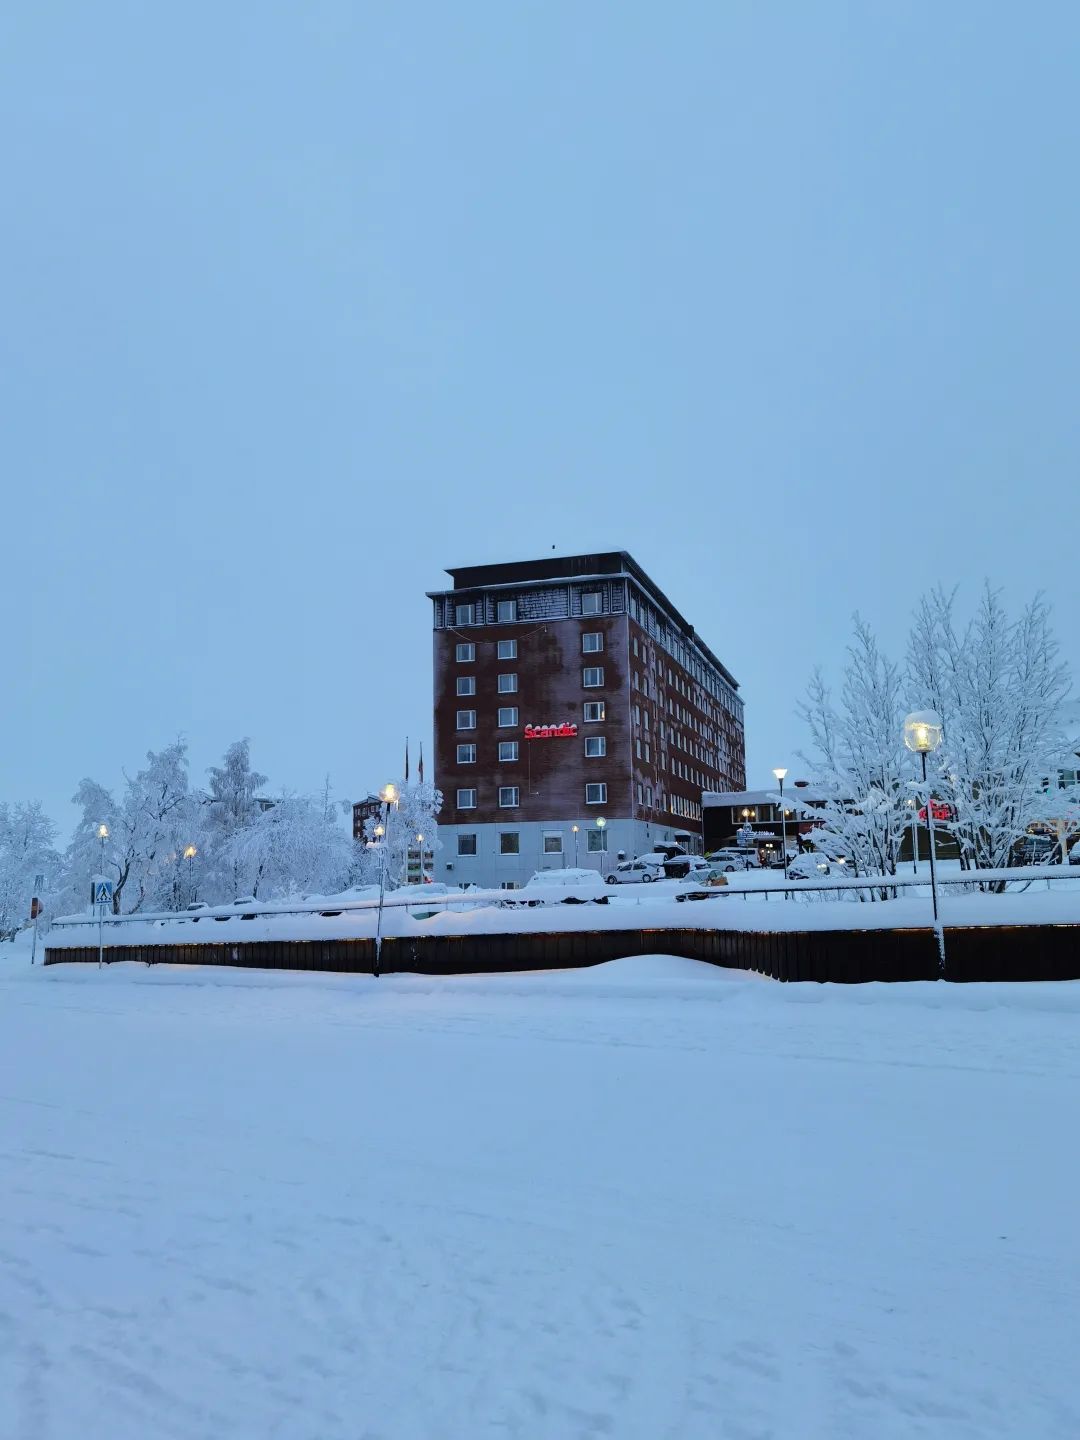 【瑞典之北】Kiruna游记上